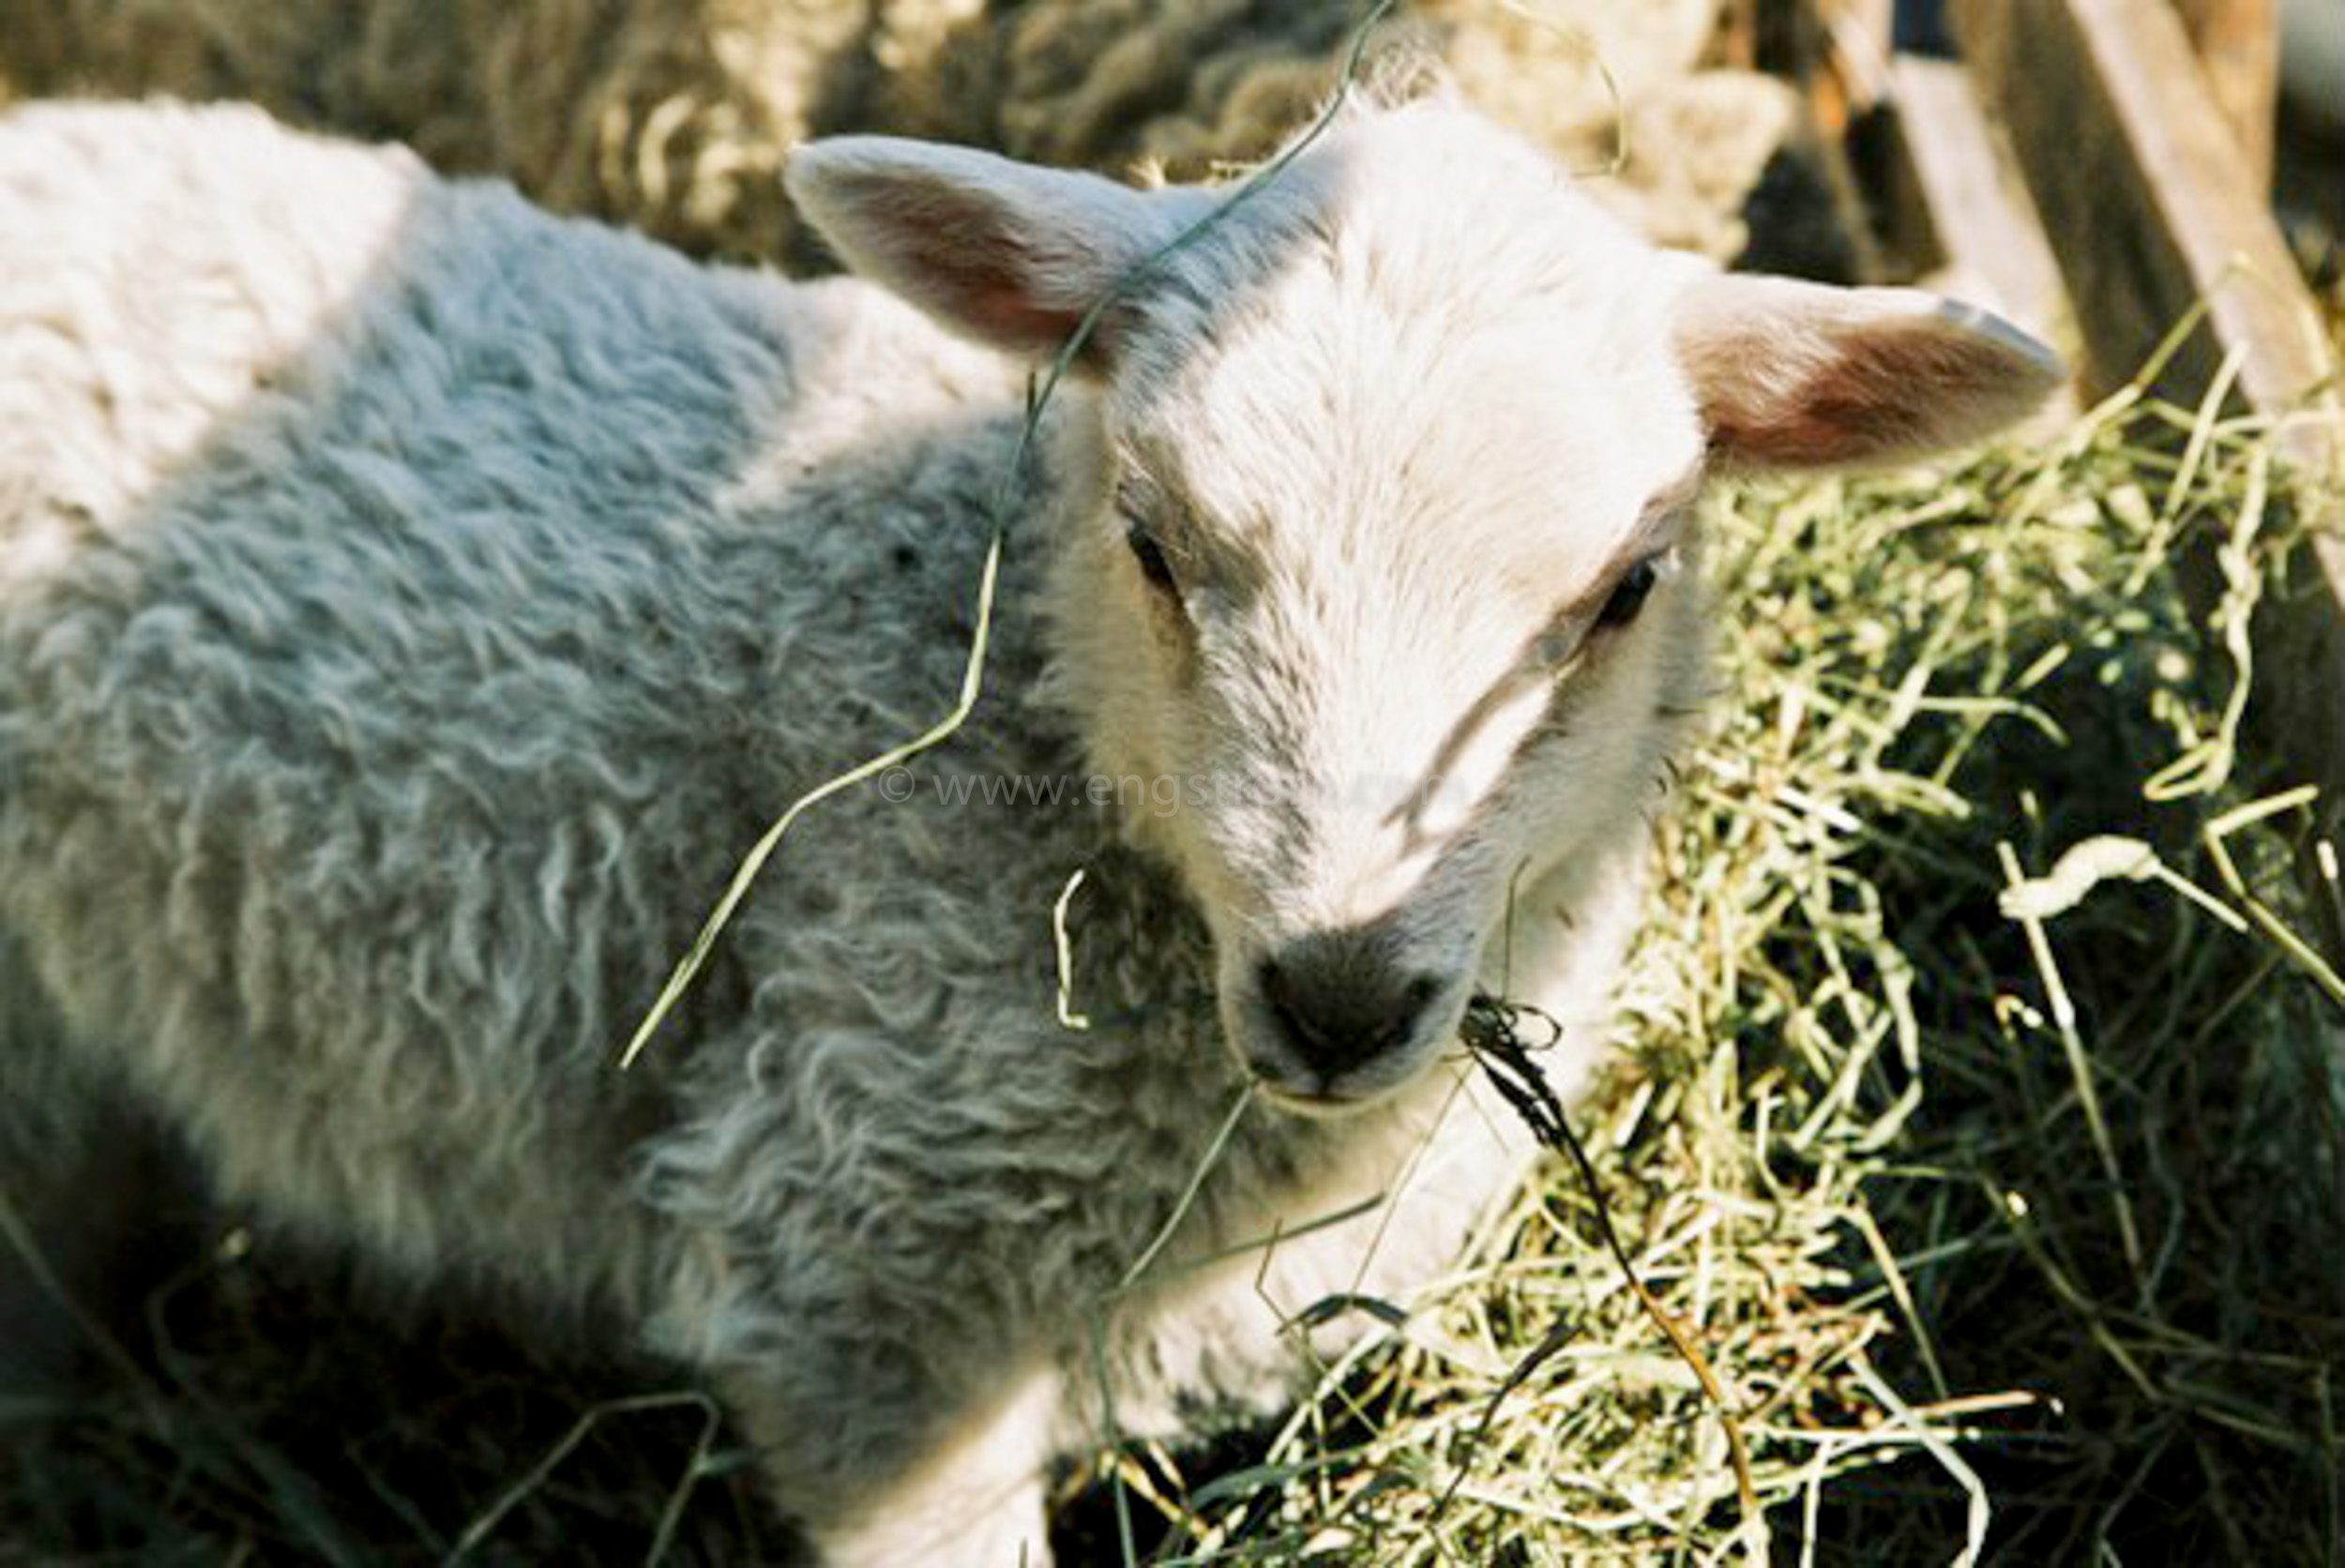 JE0405_29, Nyfödda lamm med tackor, Stocksbo våren 2004, Jonas Engström